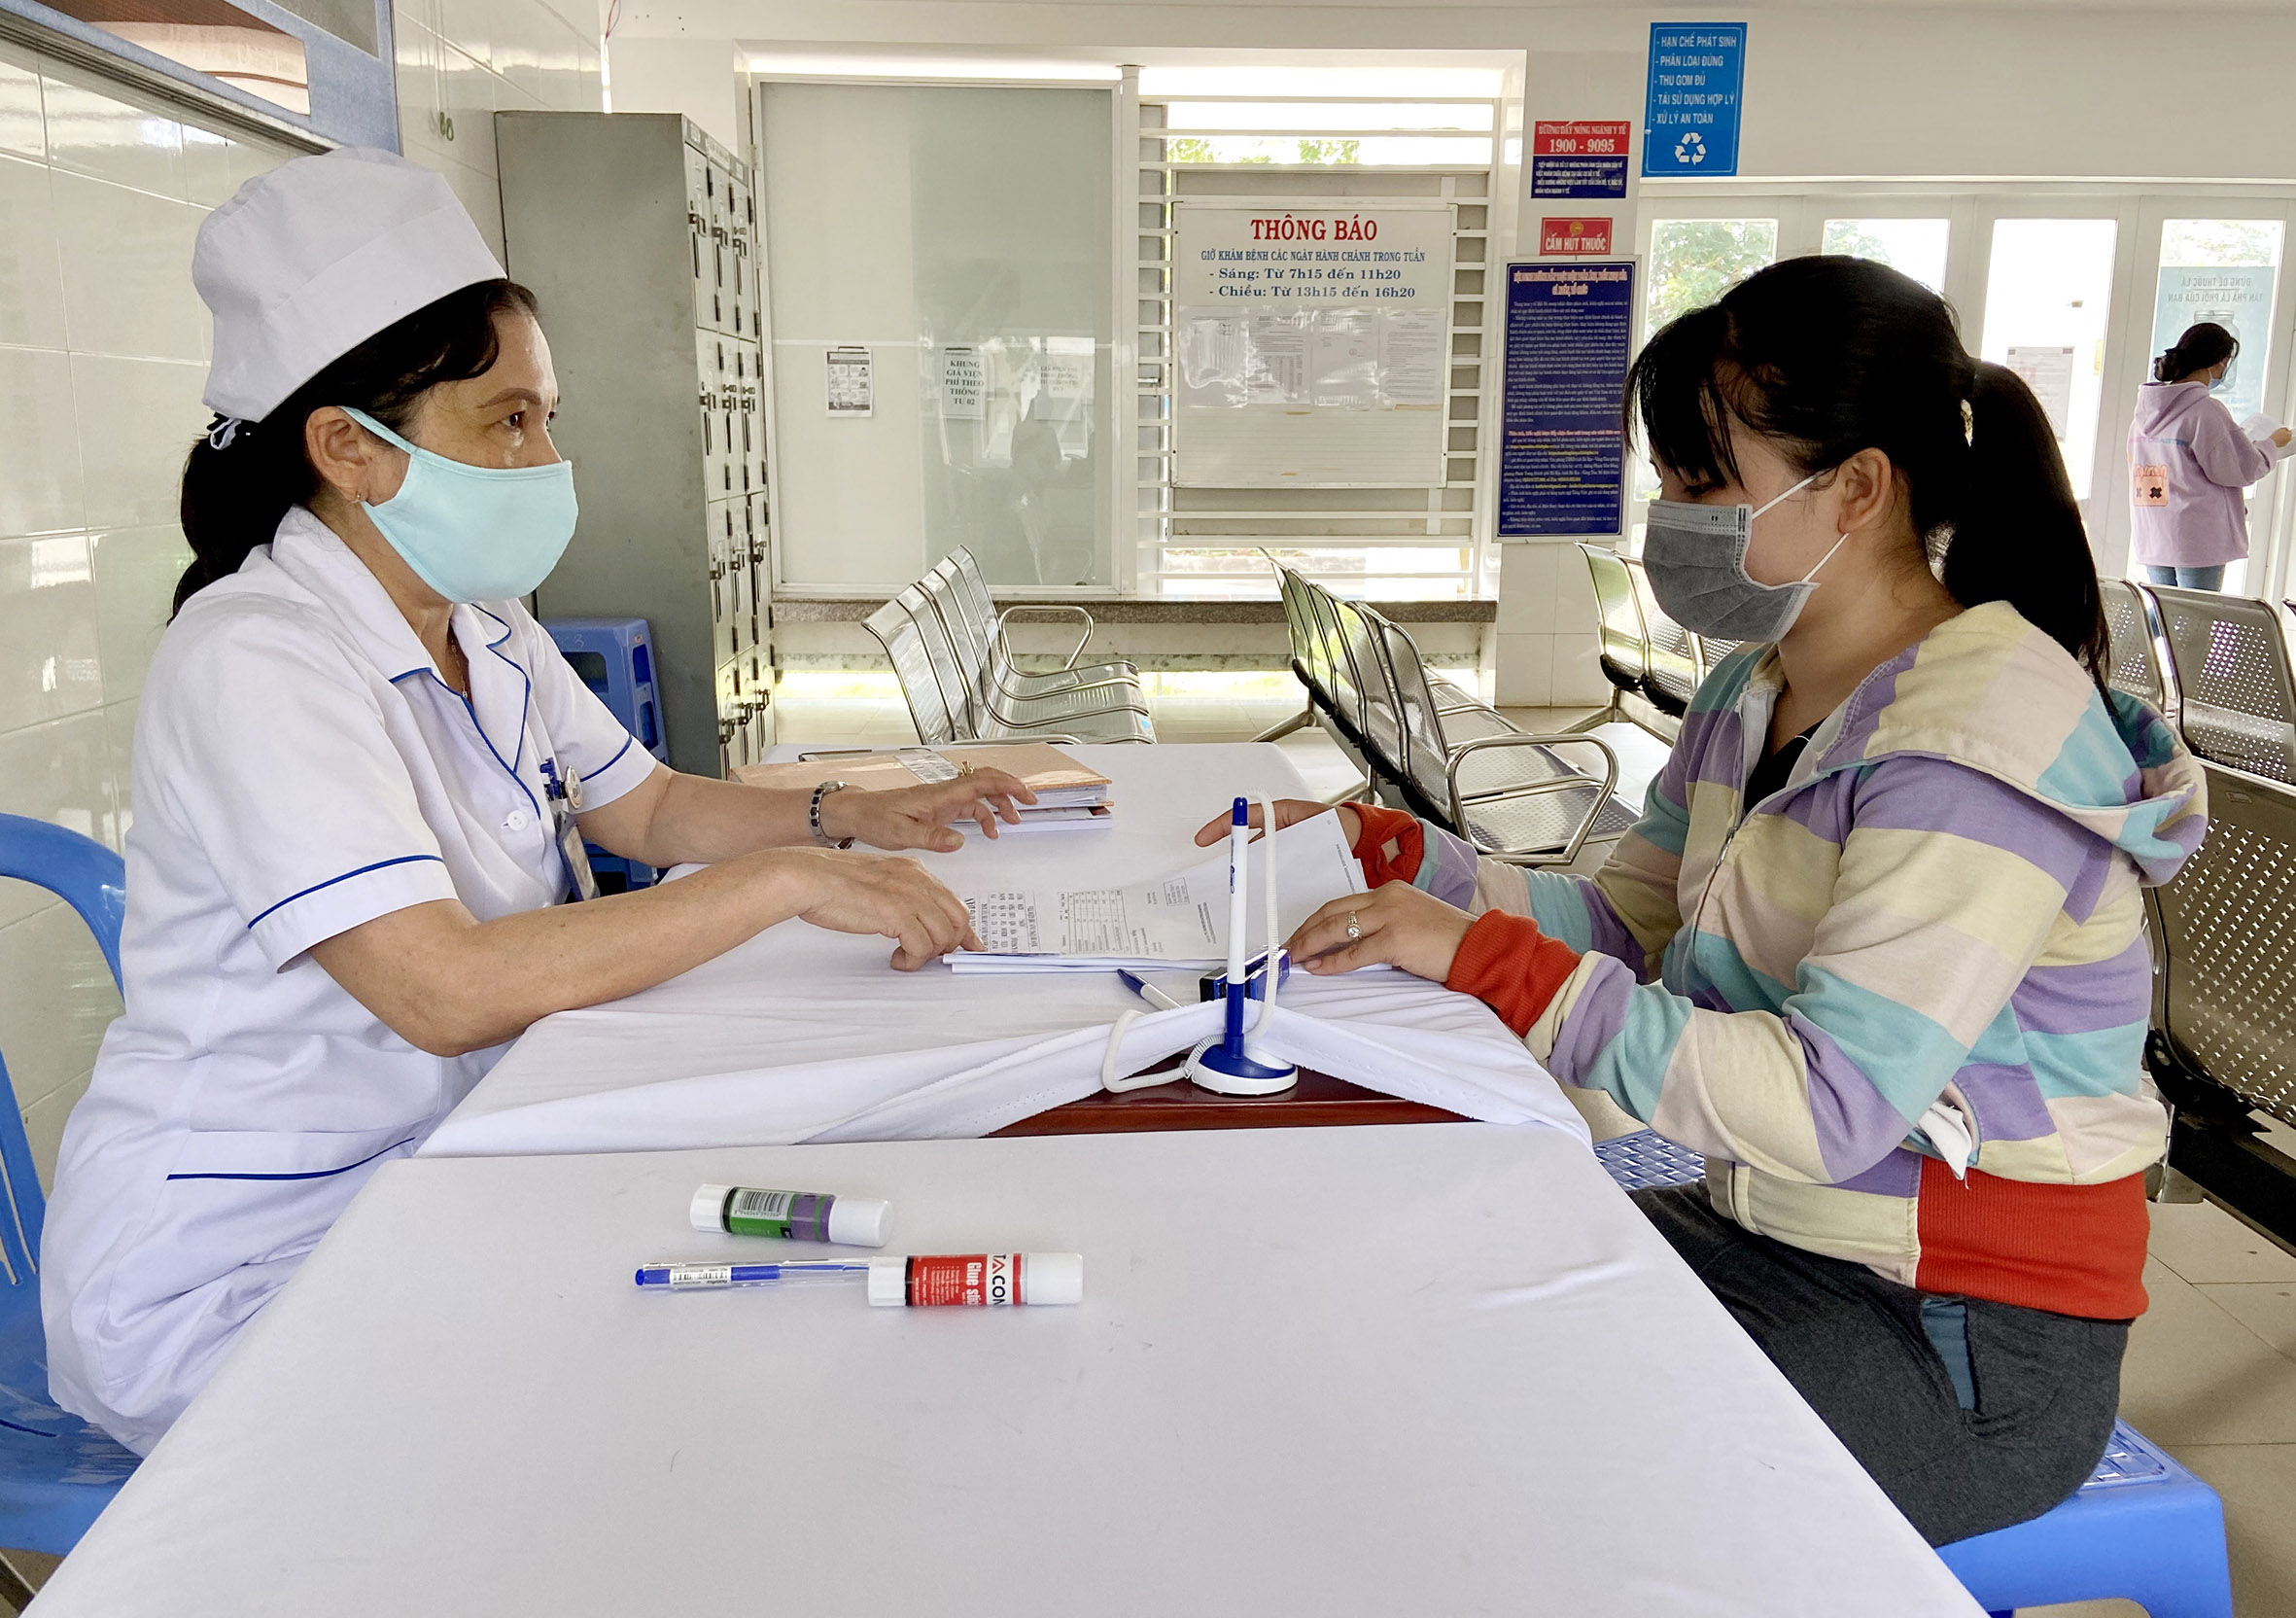 Chị Ngô Thị Nguyệt (bên phải, tổ 8, khu phố Hòa Hội, TT.Đất Đỏ) được nhân viên y tế của Trung tâm Y tế huyện Đất Đỏ hướng dẫn kê khai thông tin vào hồ sơ khám sức khỏe.